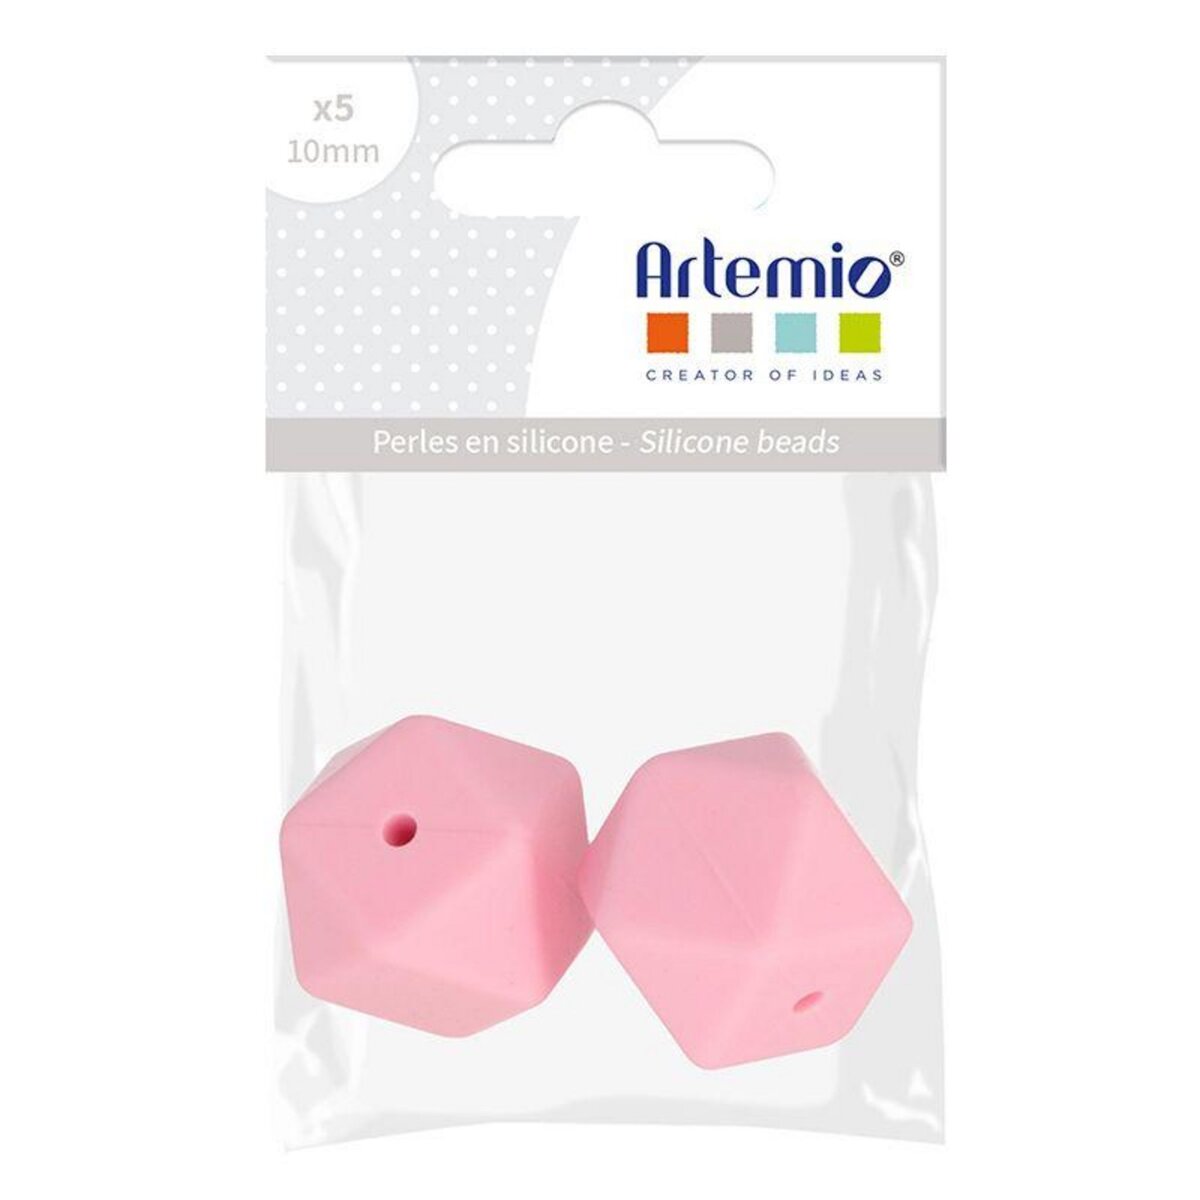 Artemio 2 perles silicone hexagonales - 17 mm - rose